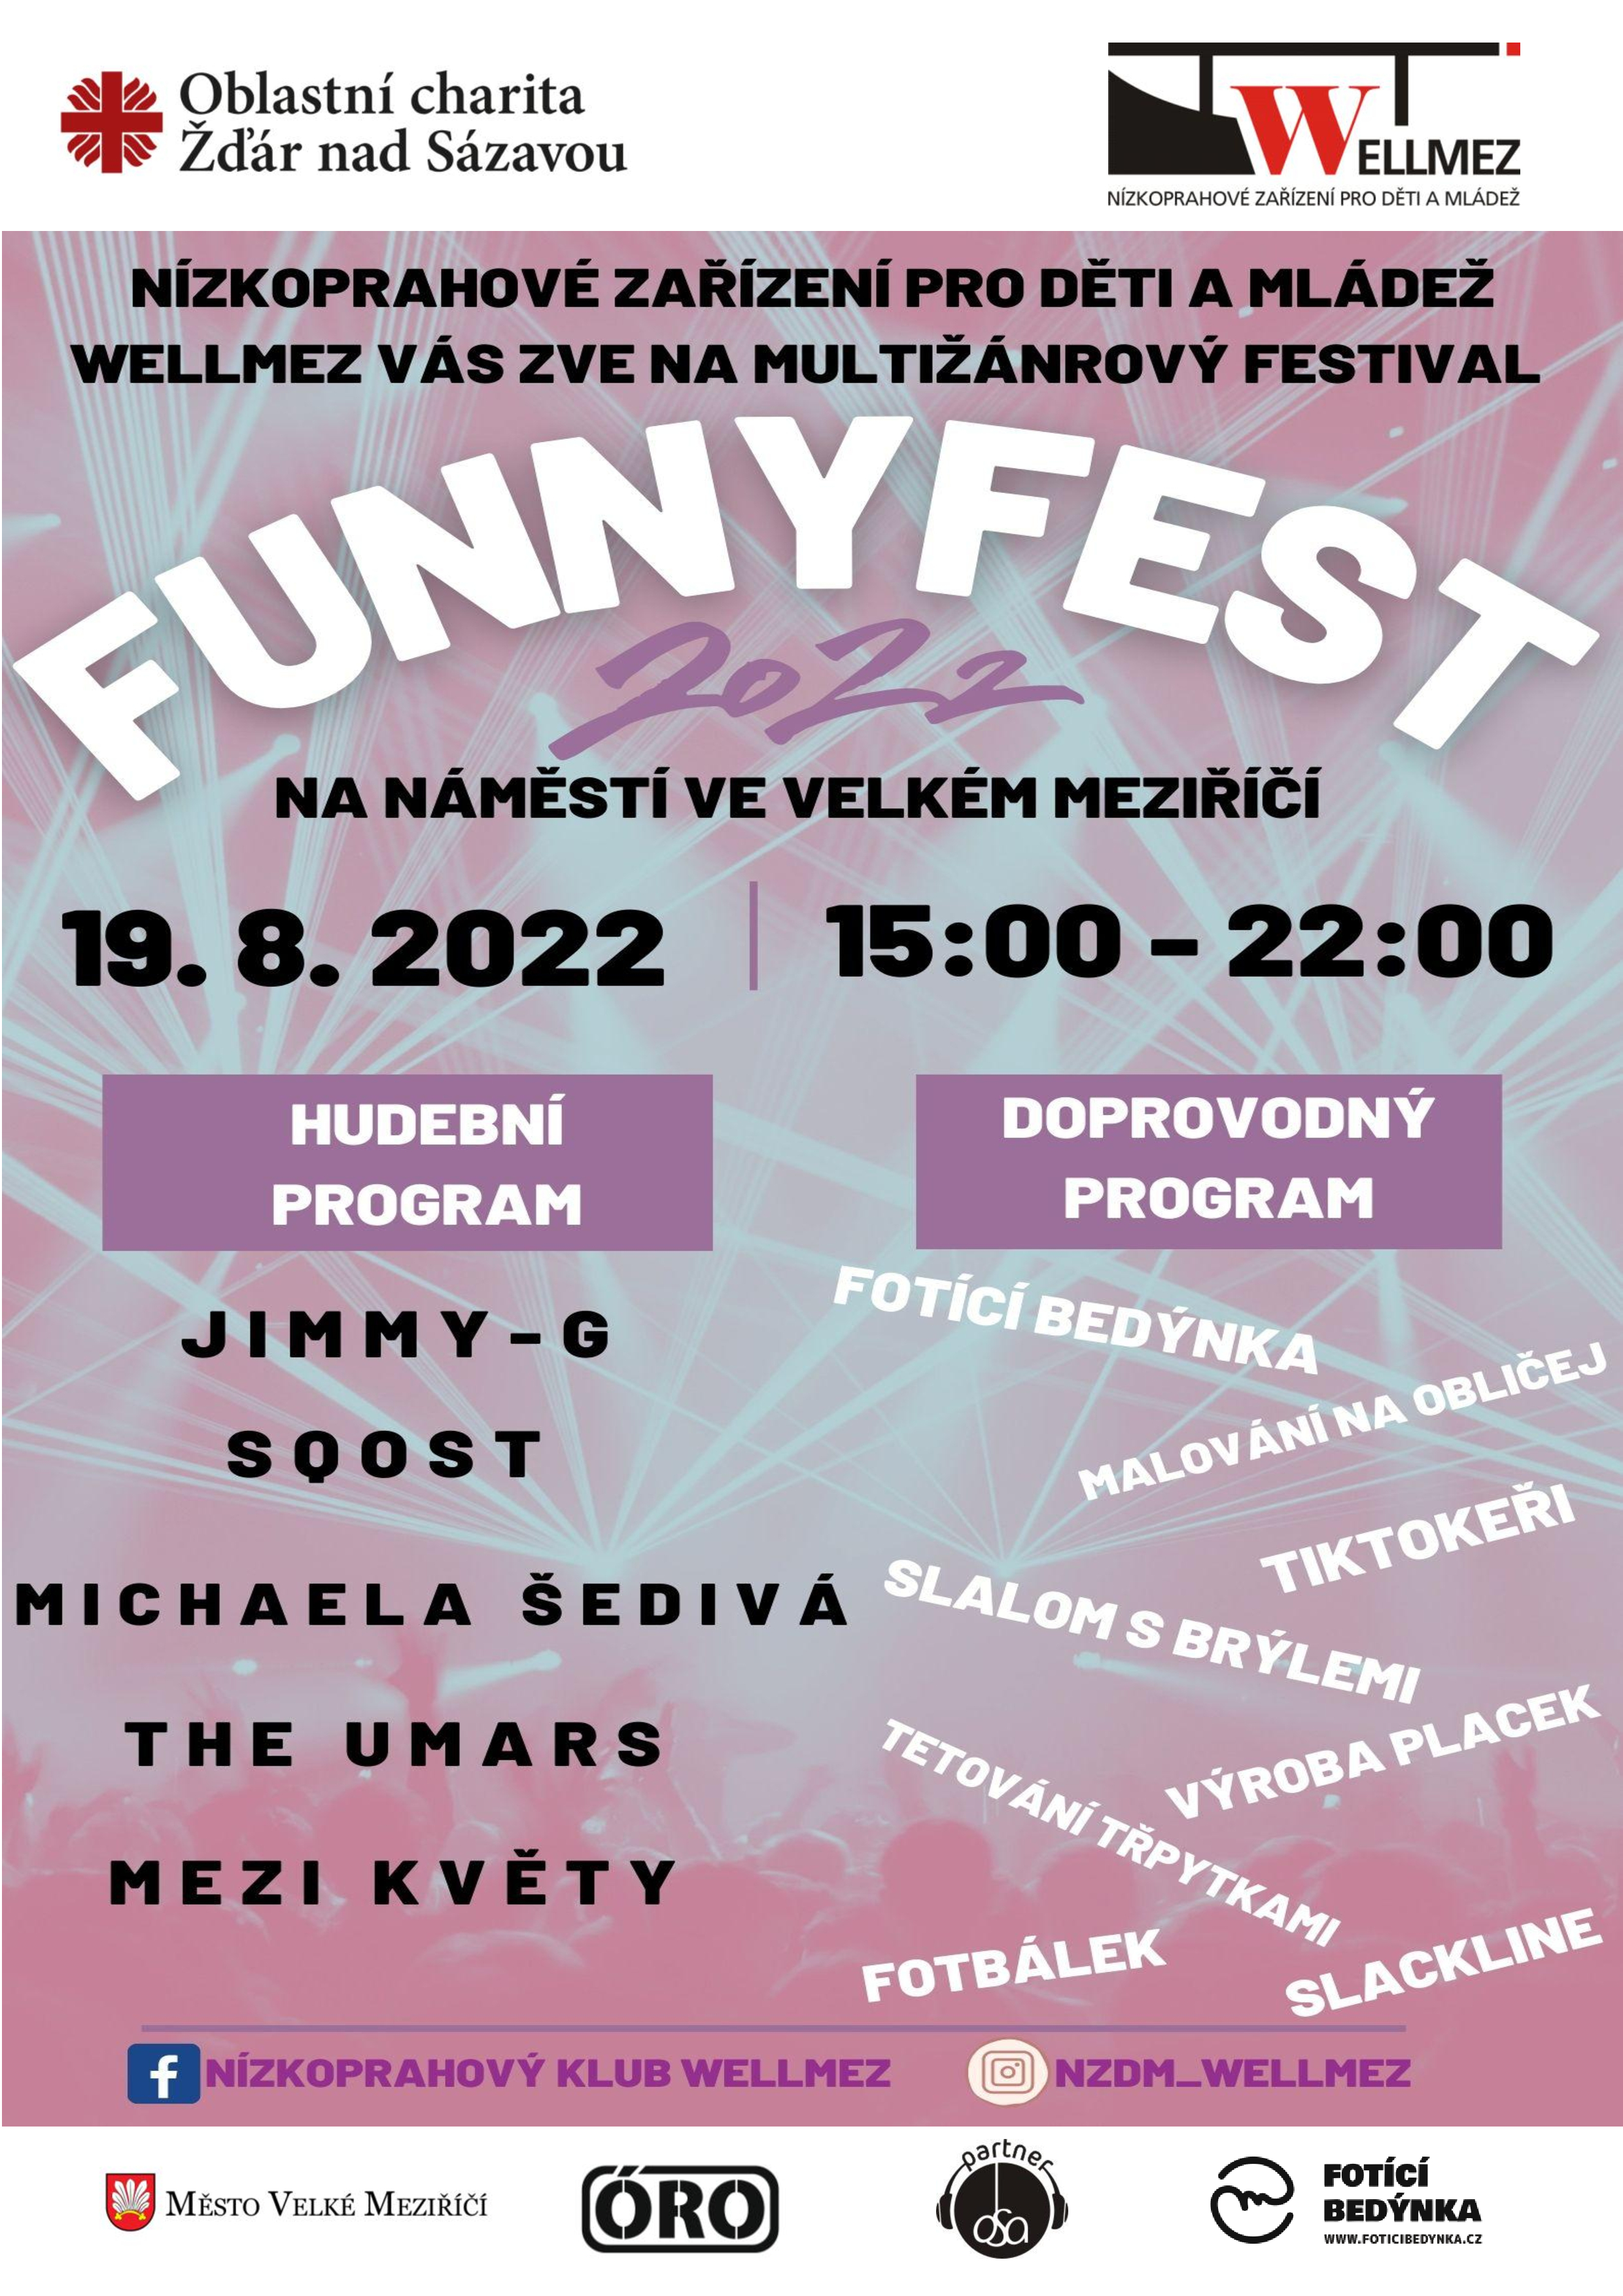 Multižánrový festival Funny Fest již dnes roztančí náměstí ve Velkém Meziříčí